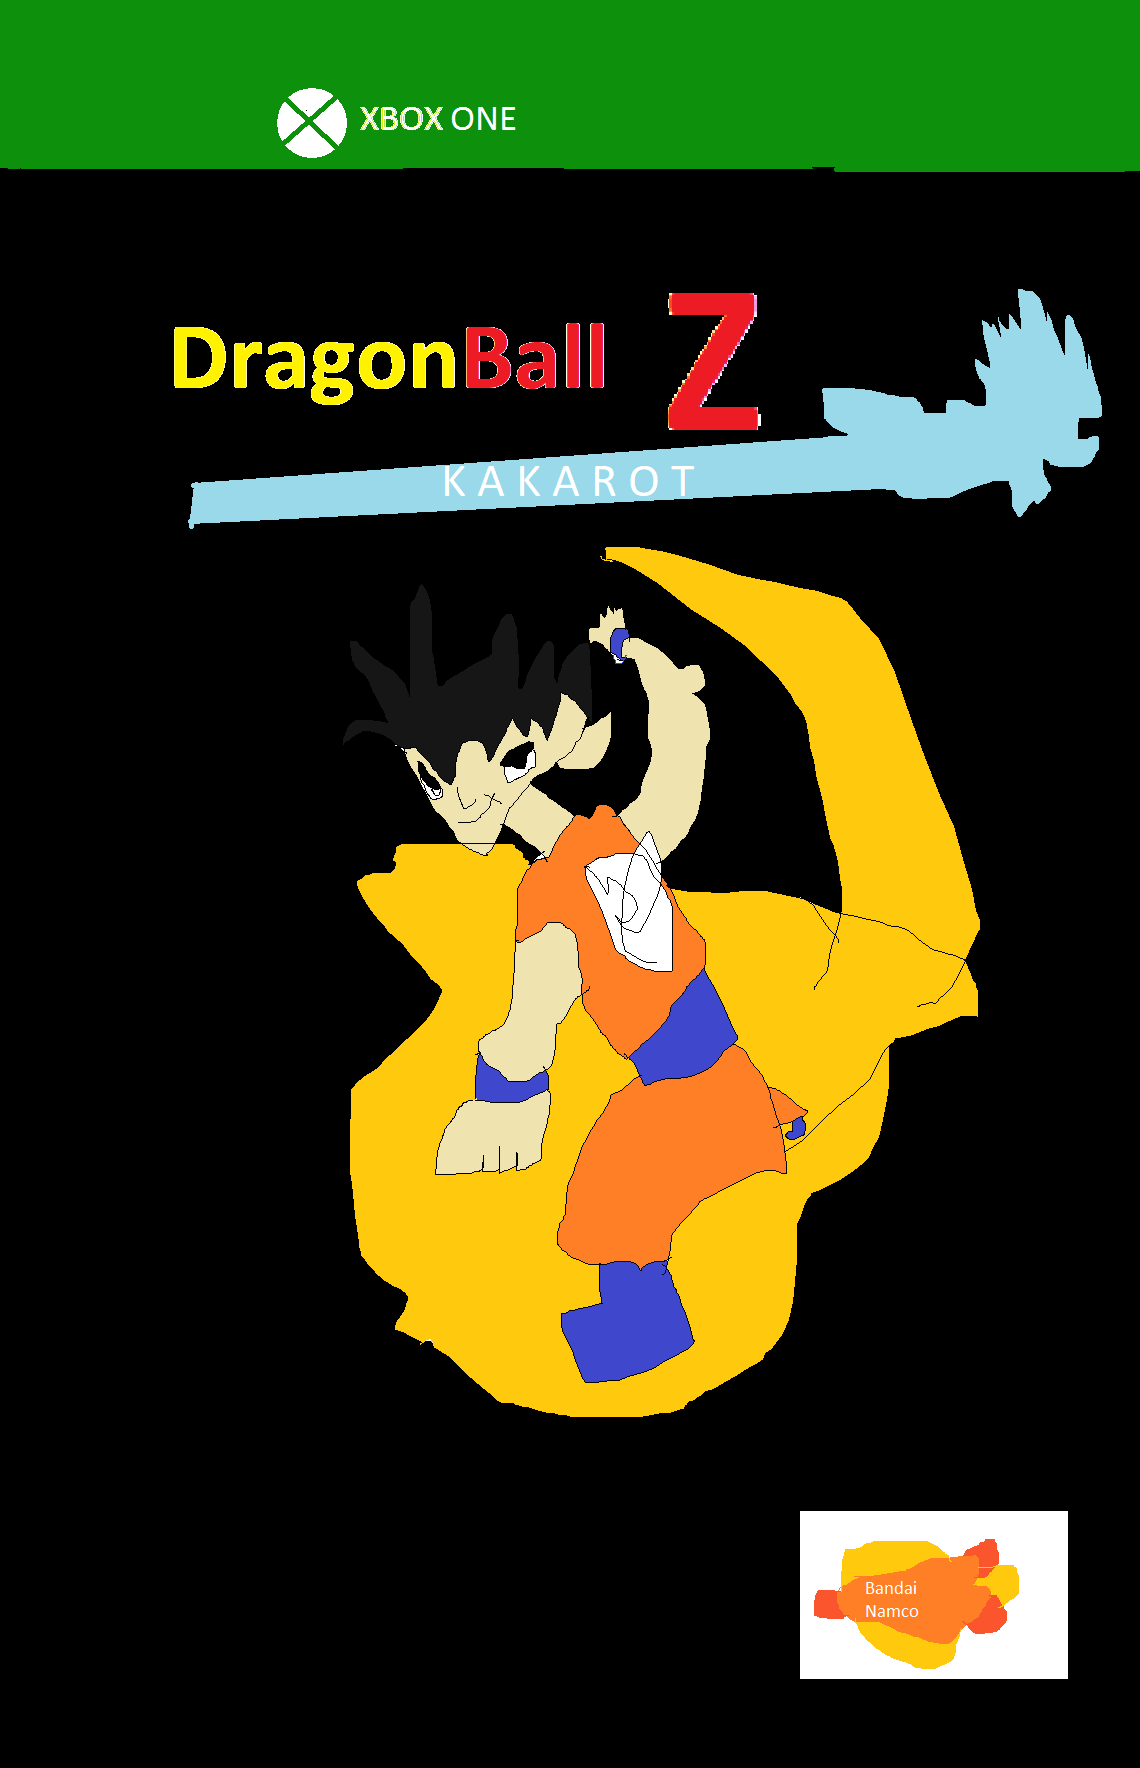 Dragon Ball Z Kakarot 3D Models by Bost0n-KR33m on DeviantArt